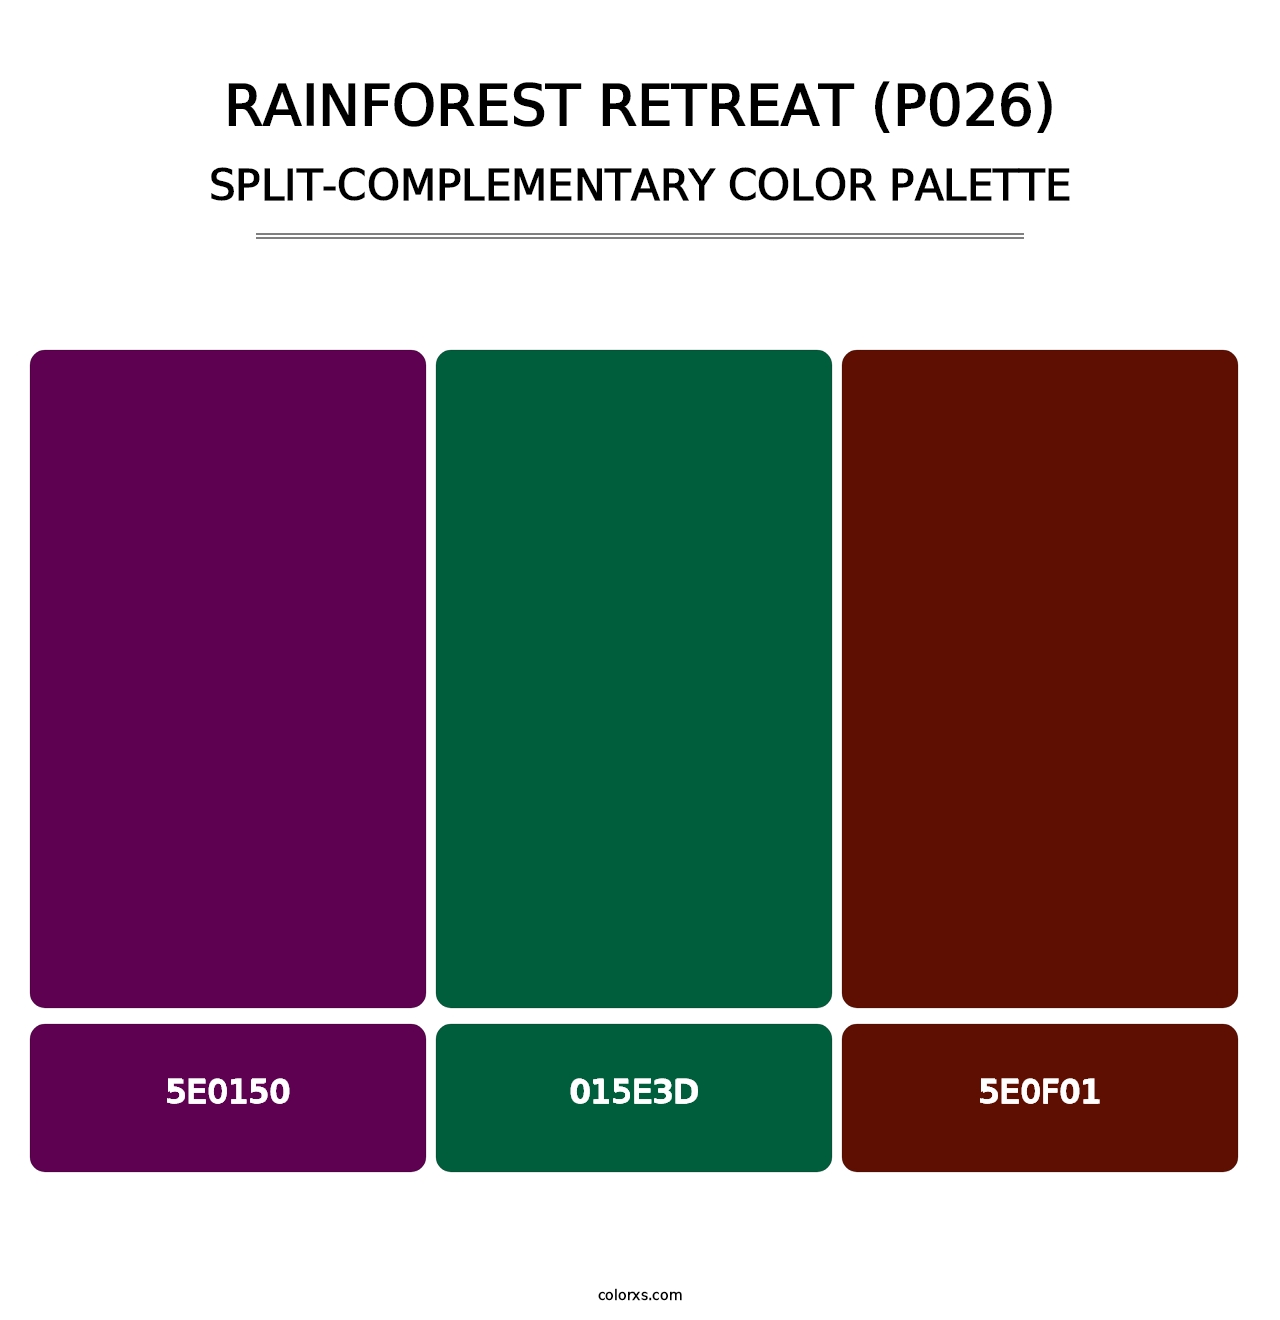 Rainforest Retreat (P026) - Split-Complementary Color Palette